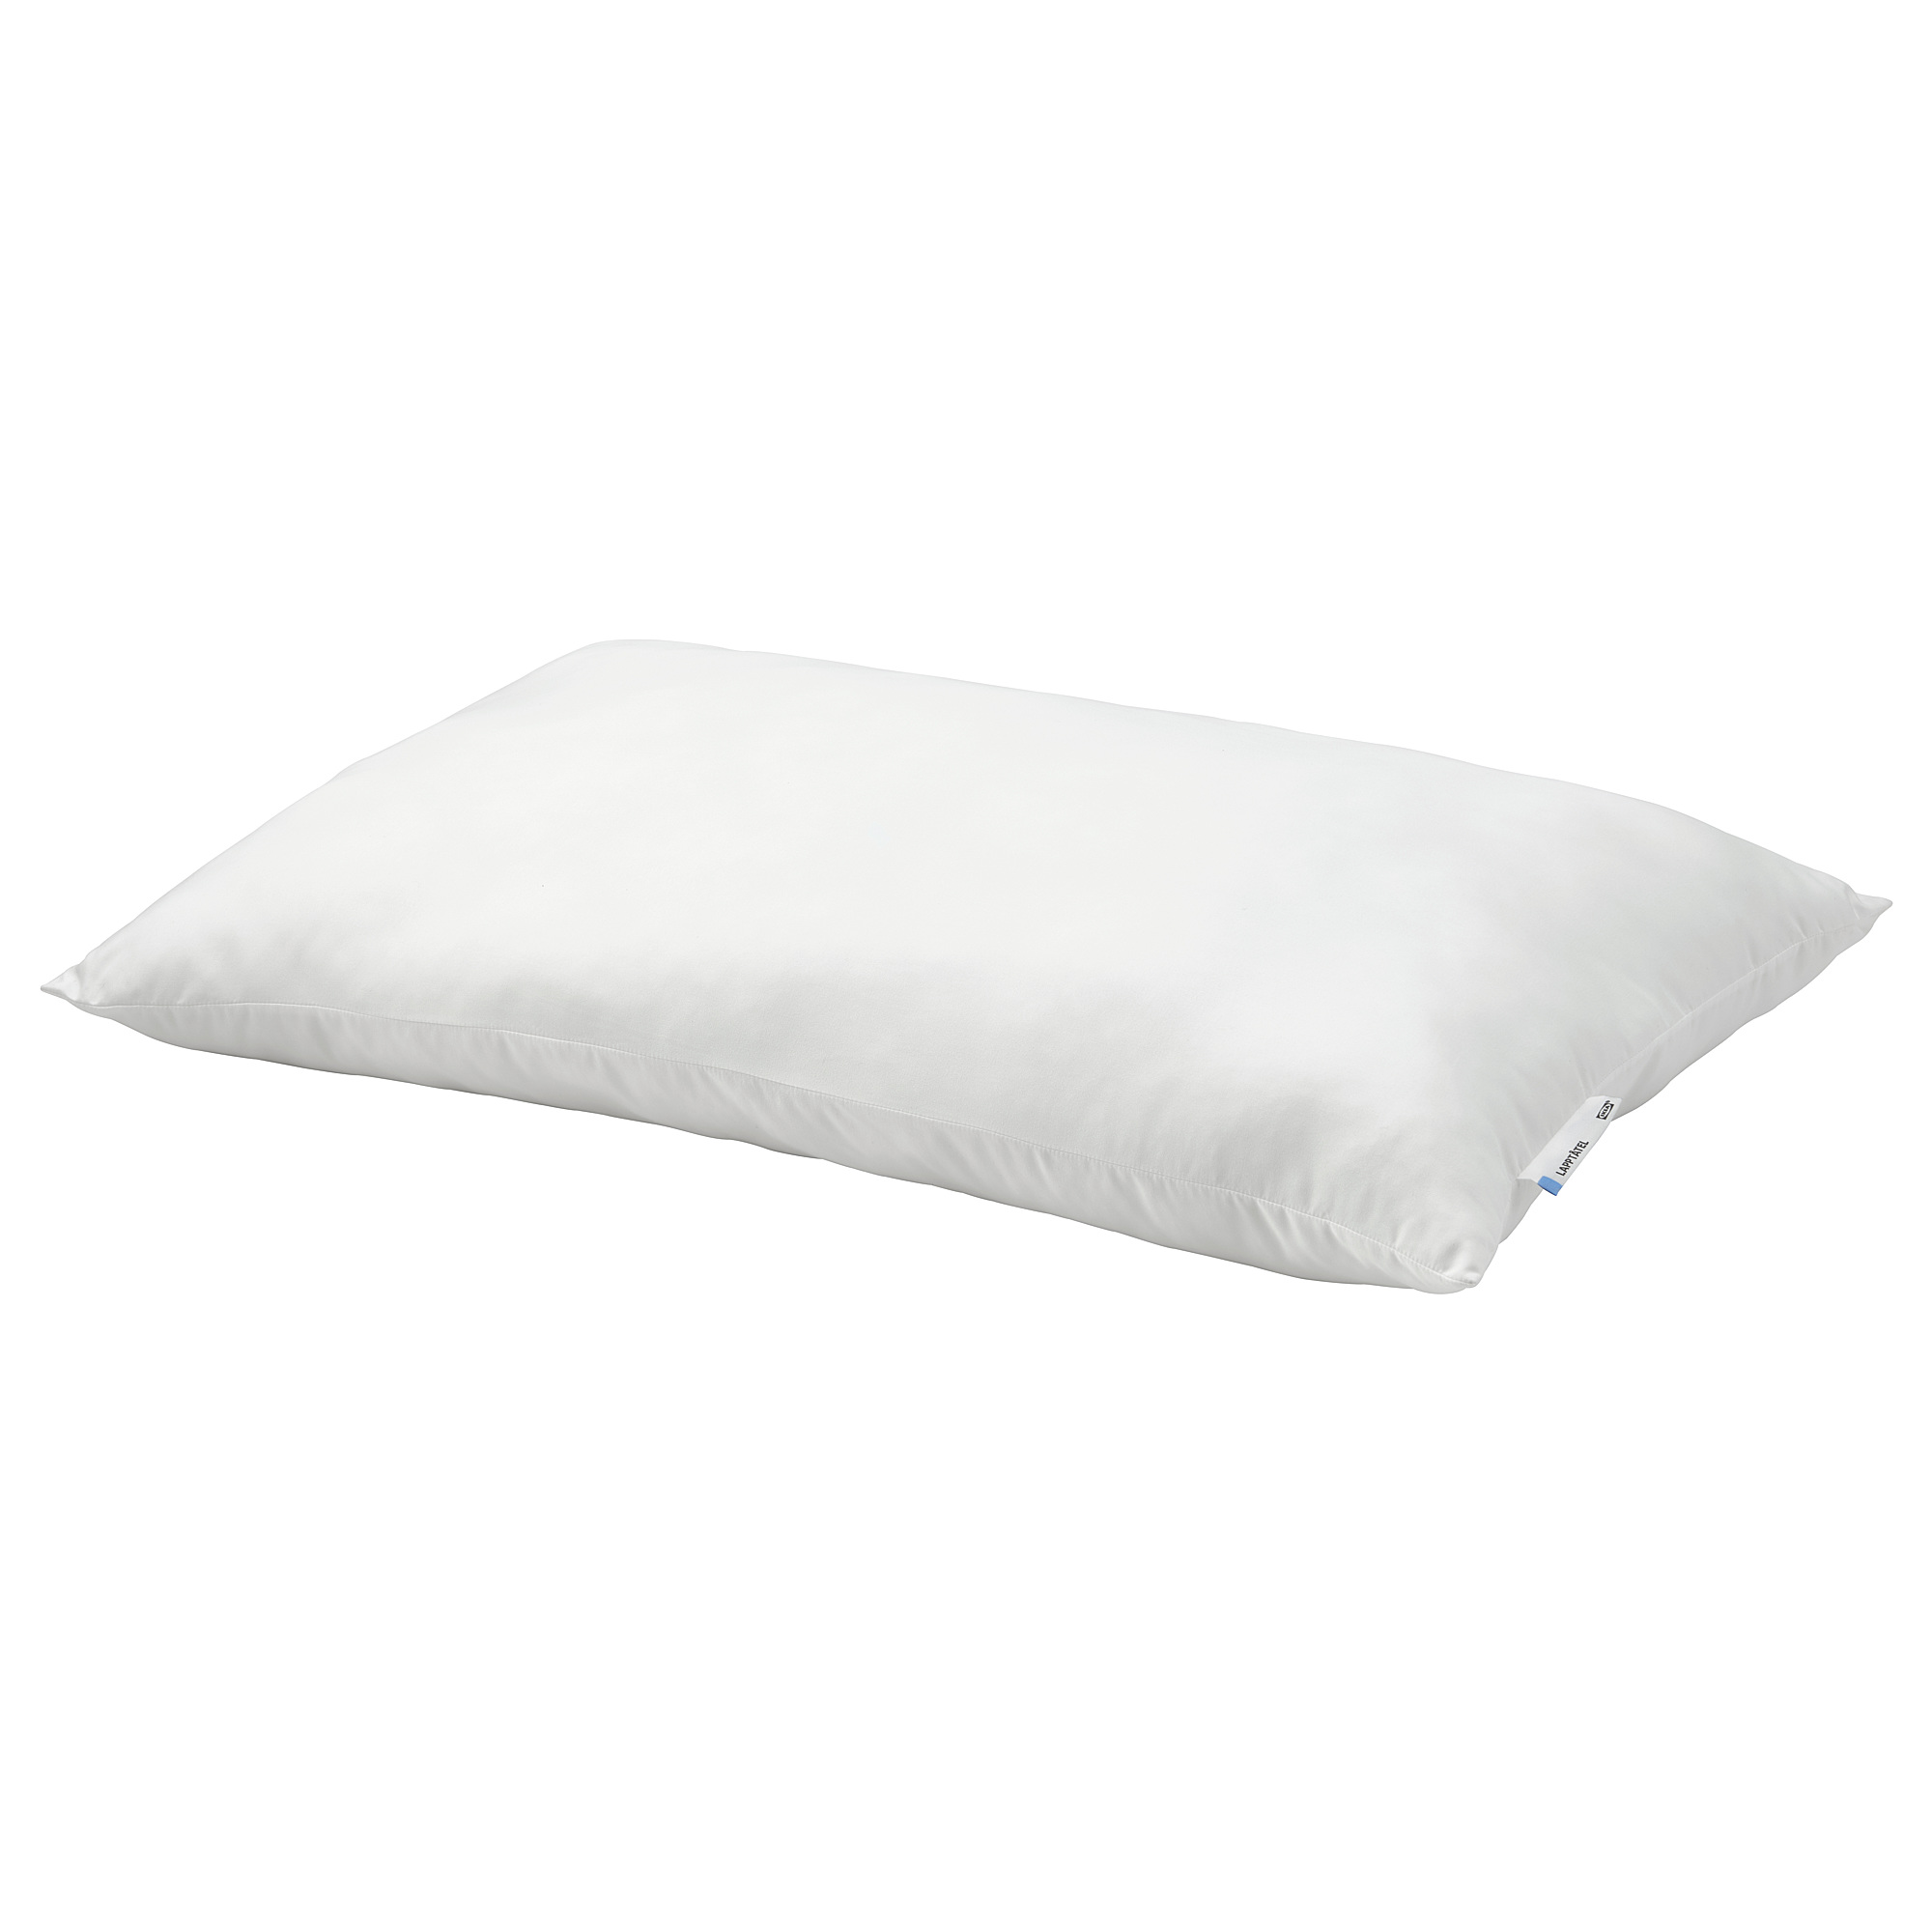 LAPPTÅTEL 枕頭/低枕